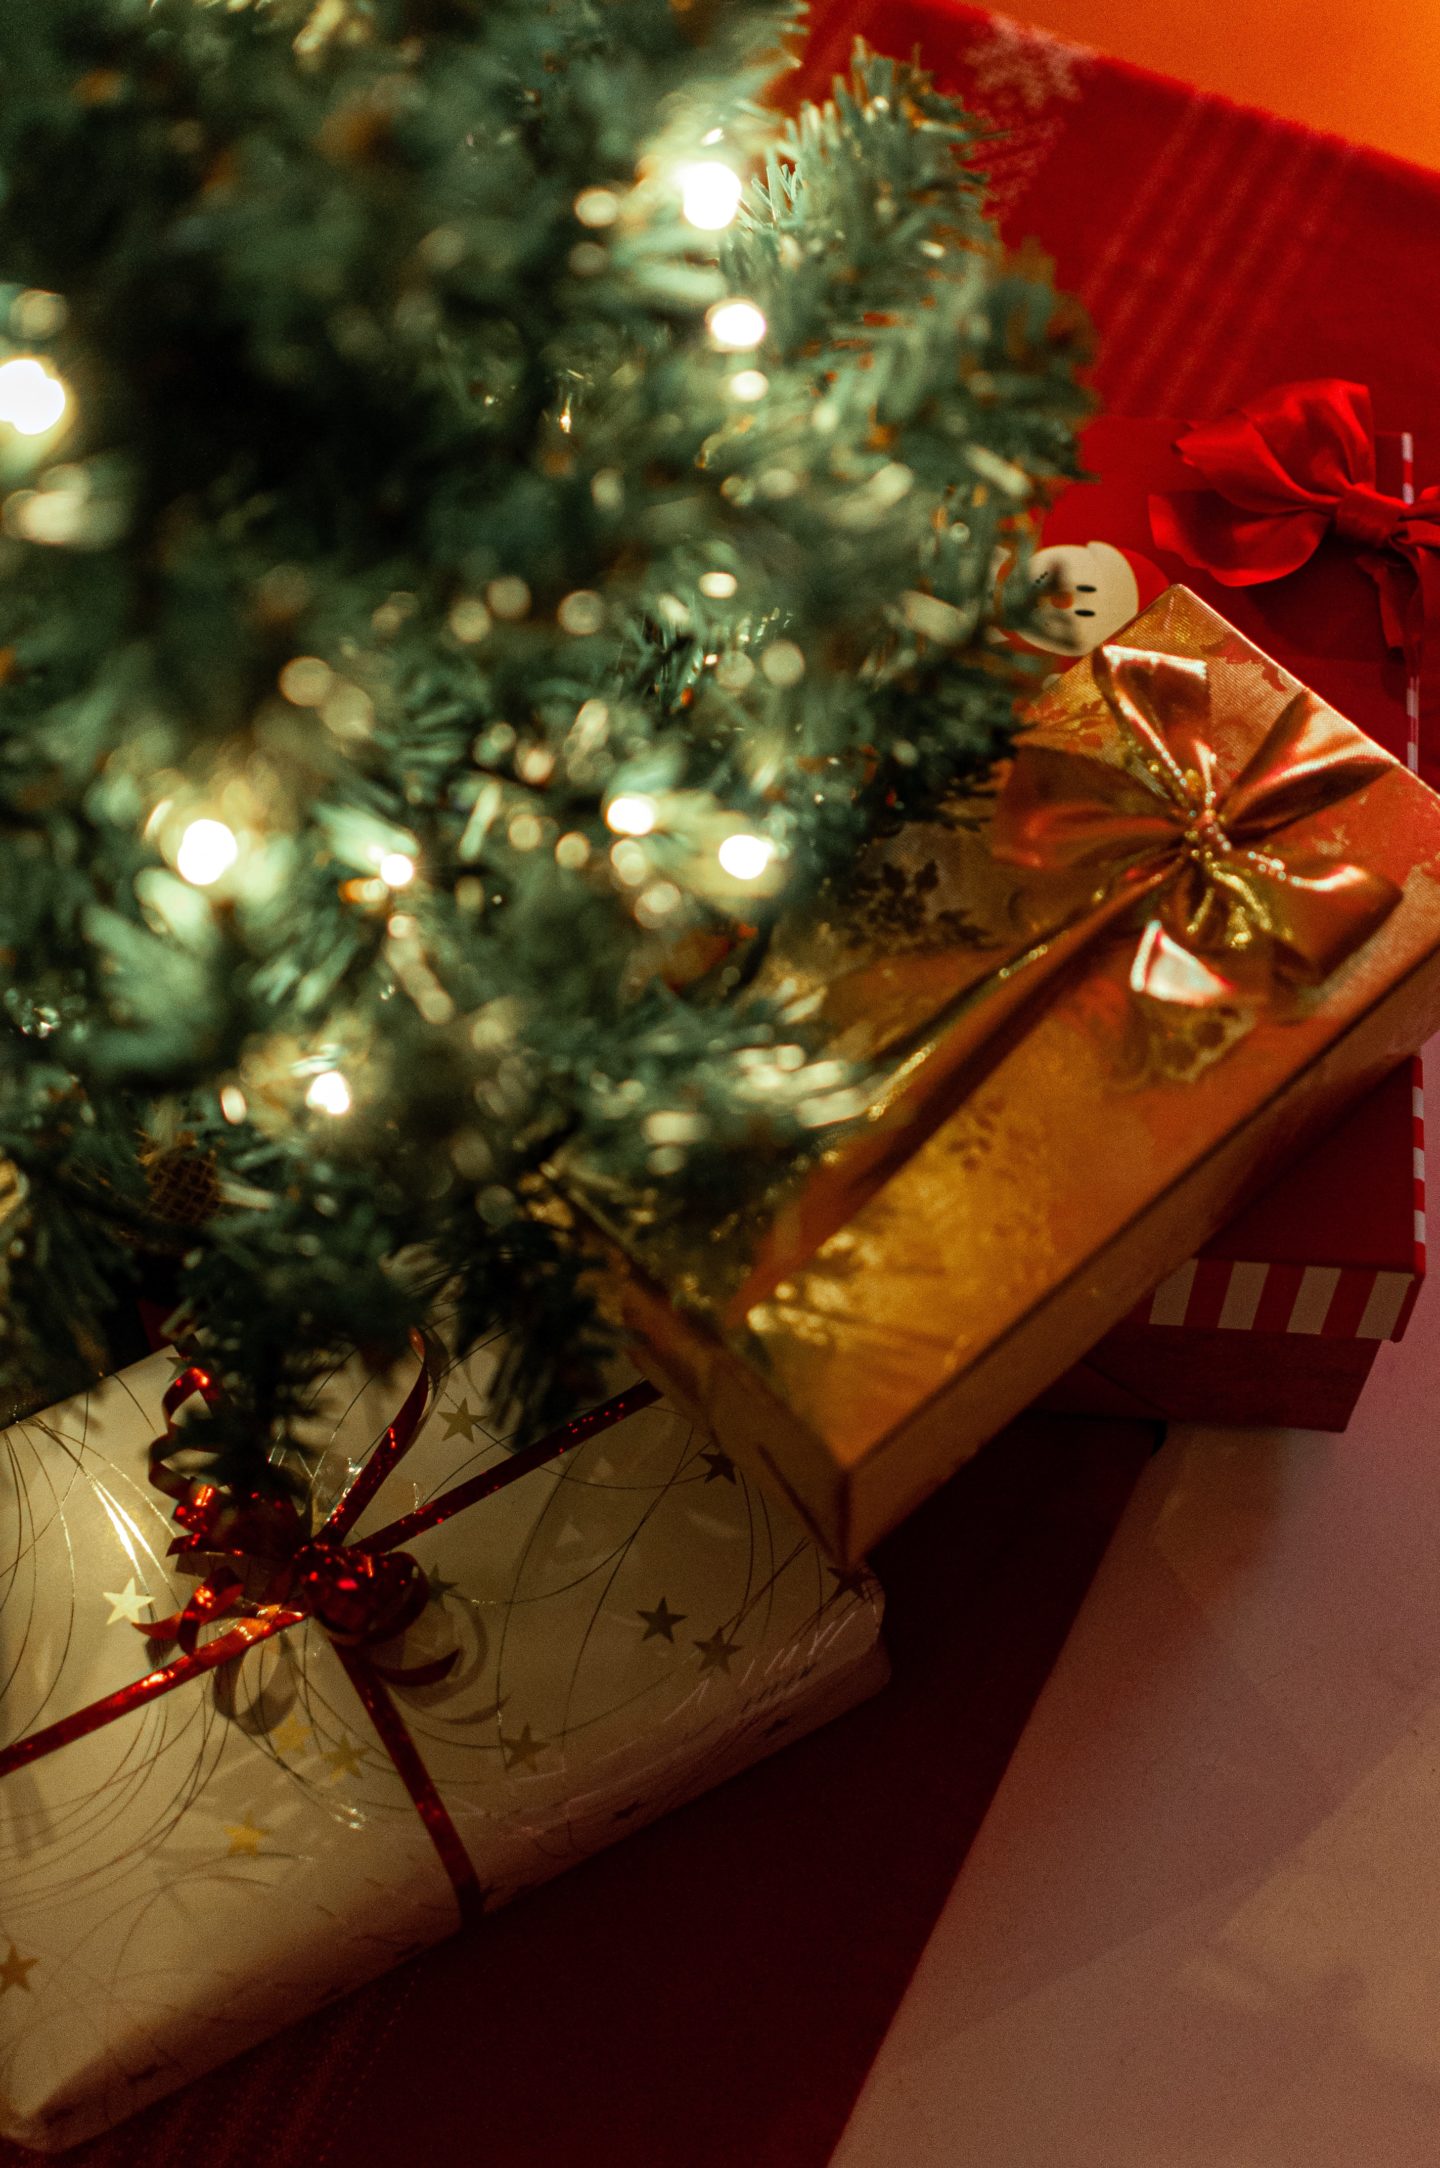 100 cadeaux à moins de 20€ à offrir à Noël - Le So Girly Blog